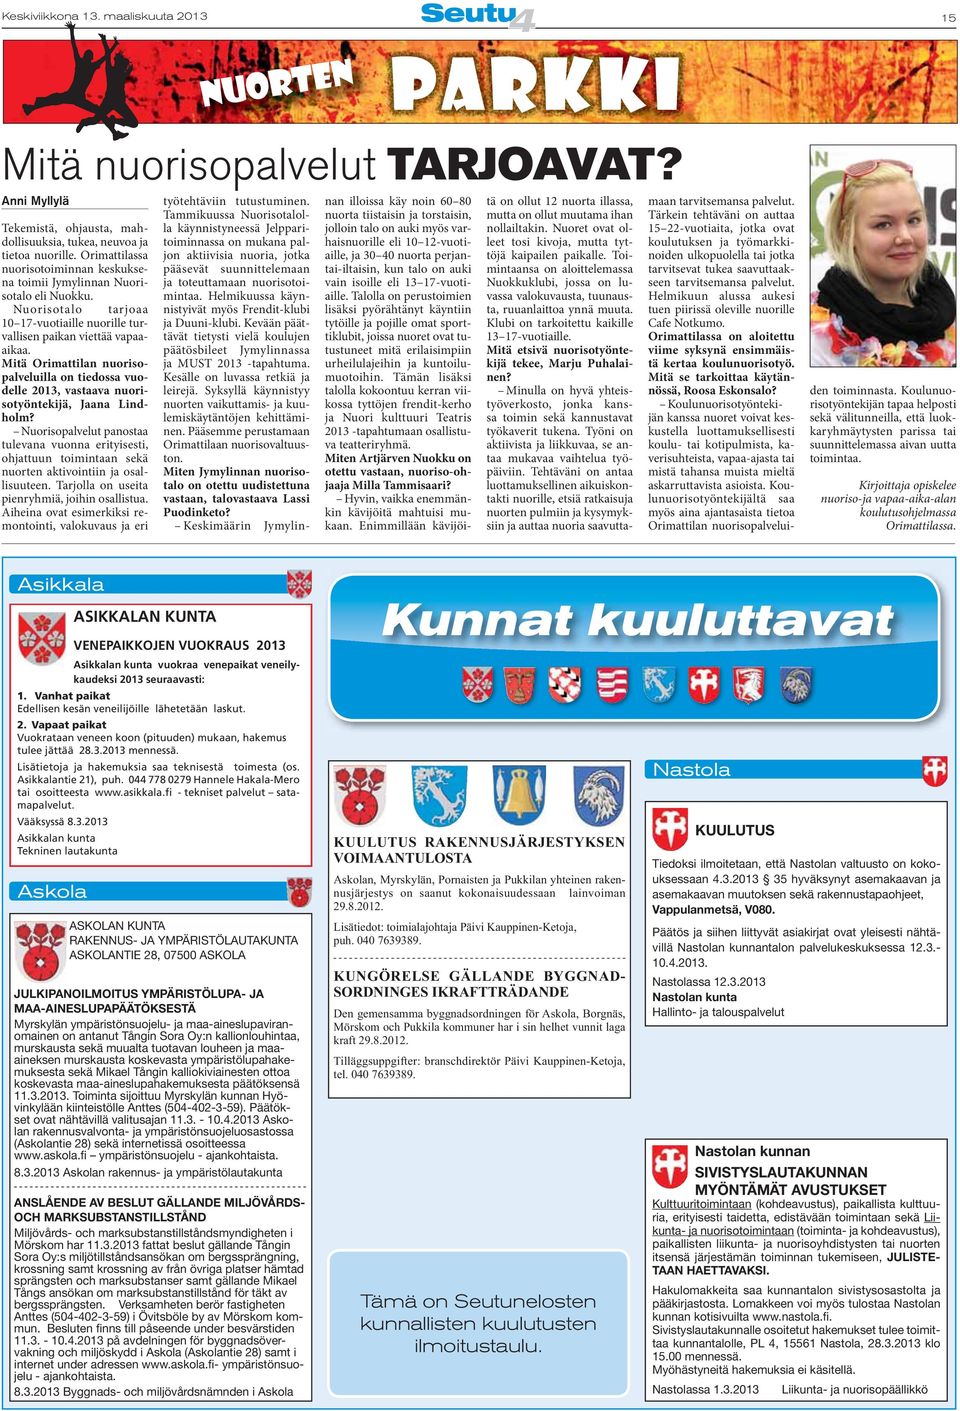 Mitä Orimattilan nuorisopalveluilla on tiedossa vuodelle 2013, vastaava nuorisotyöntekijä, Jaana Lindholm?